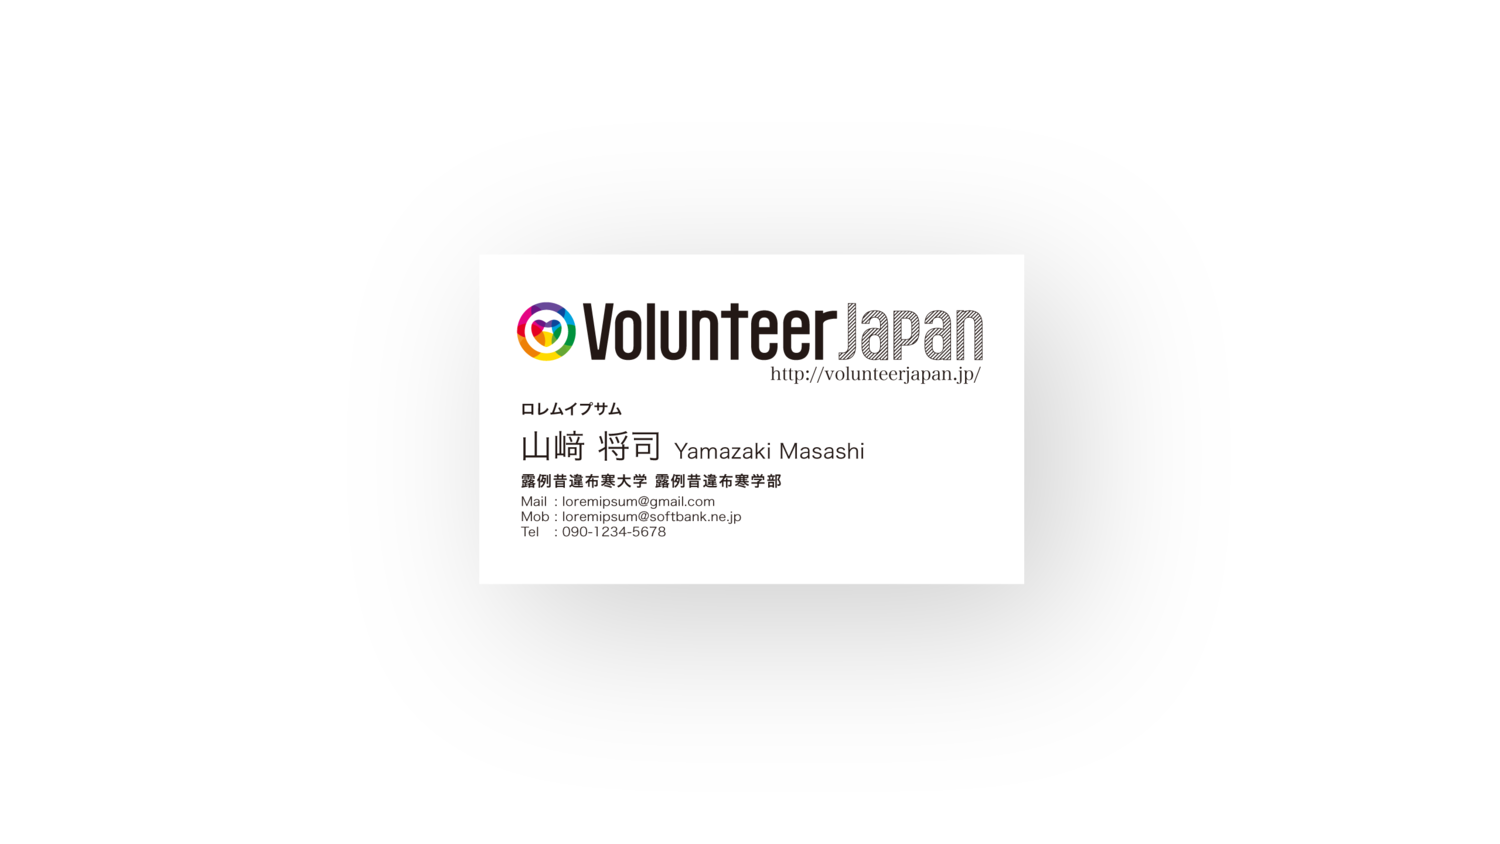 ボランティアジャパンの名刺画像を追加 Masashi Yamazaki